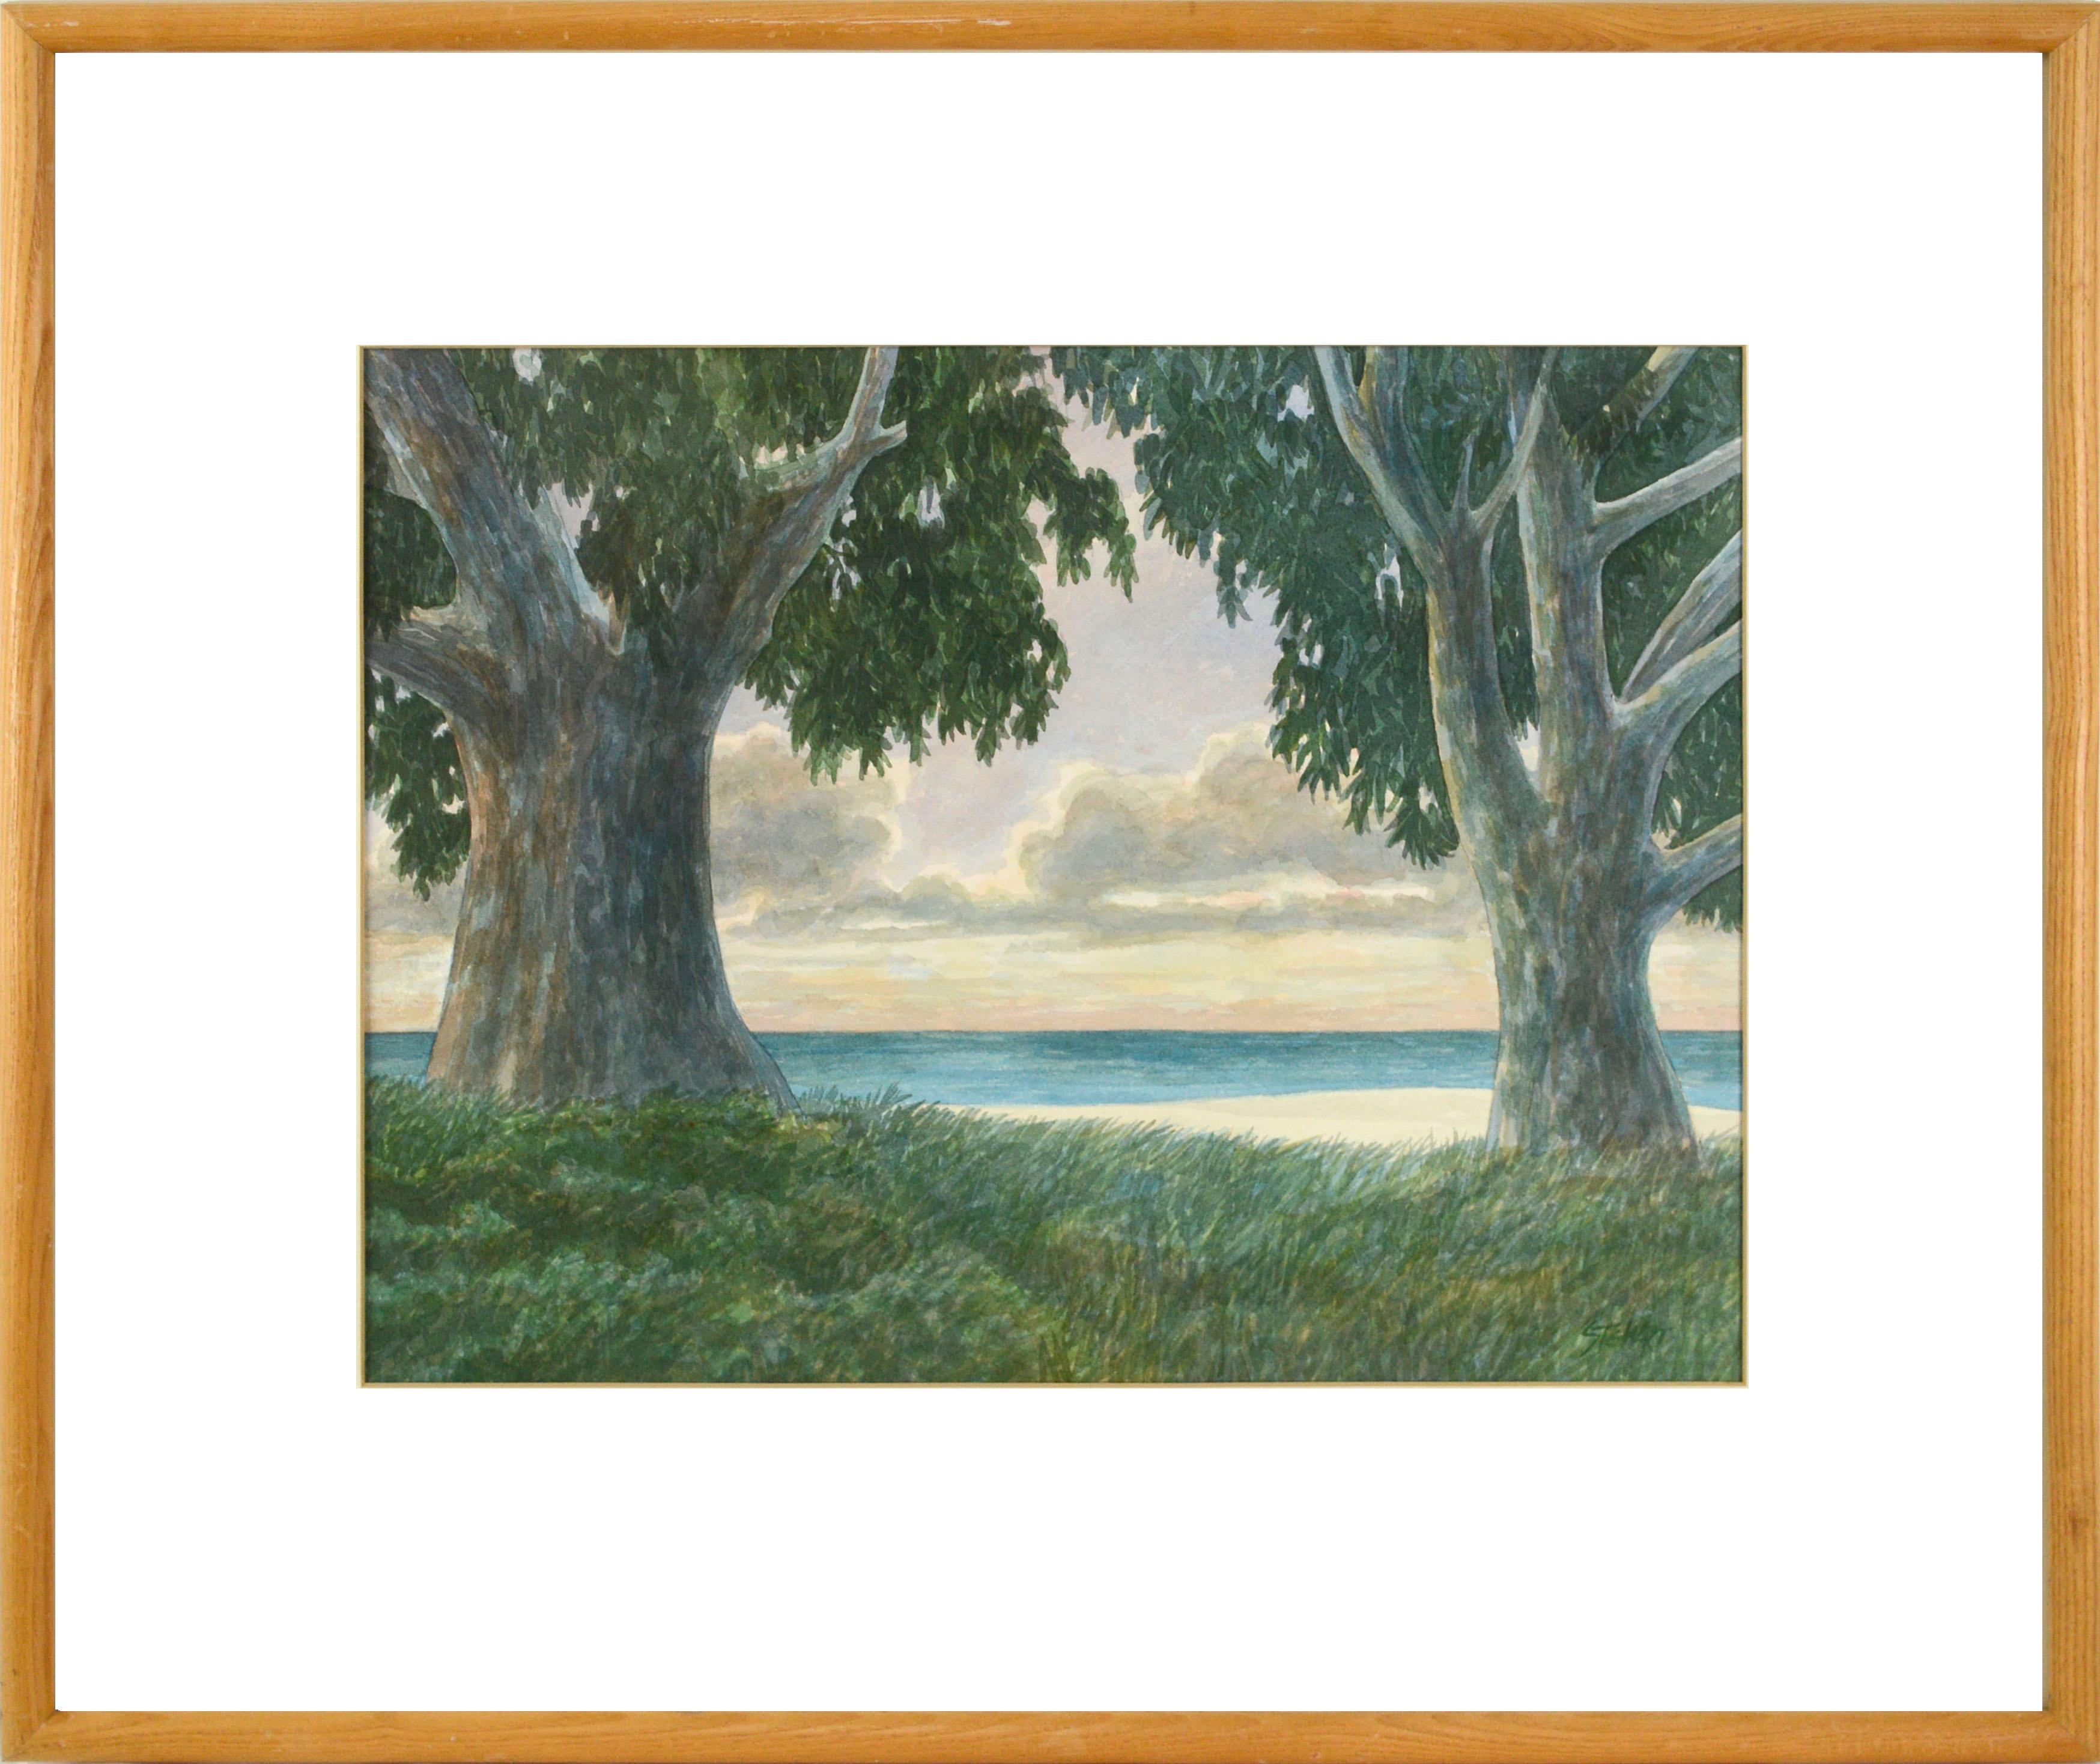 "Shoreline", paysage côtier moderne

Eucalyptus, coucher de soleil Paysage côtier Aquarelle de Kipp Stewart (Américain, né en 1928), fin du 20e siècle. Cette scène vivante utilise une palette polychrome douce et rêveuse de jaune doré, de violet